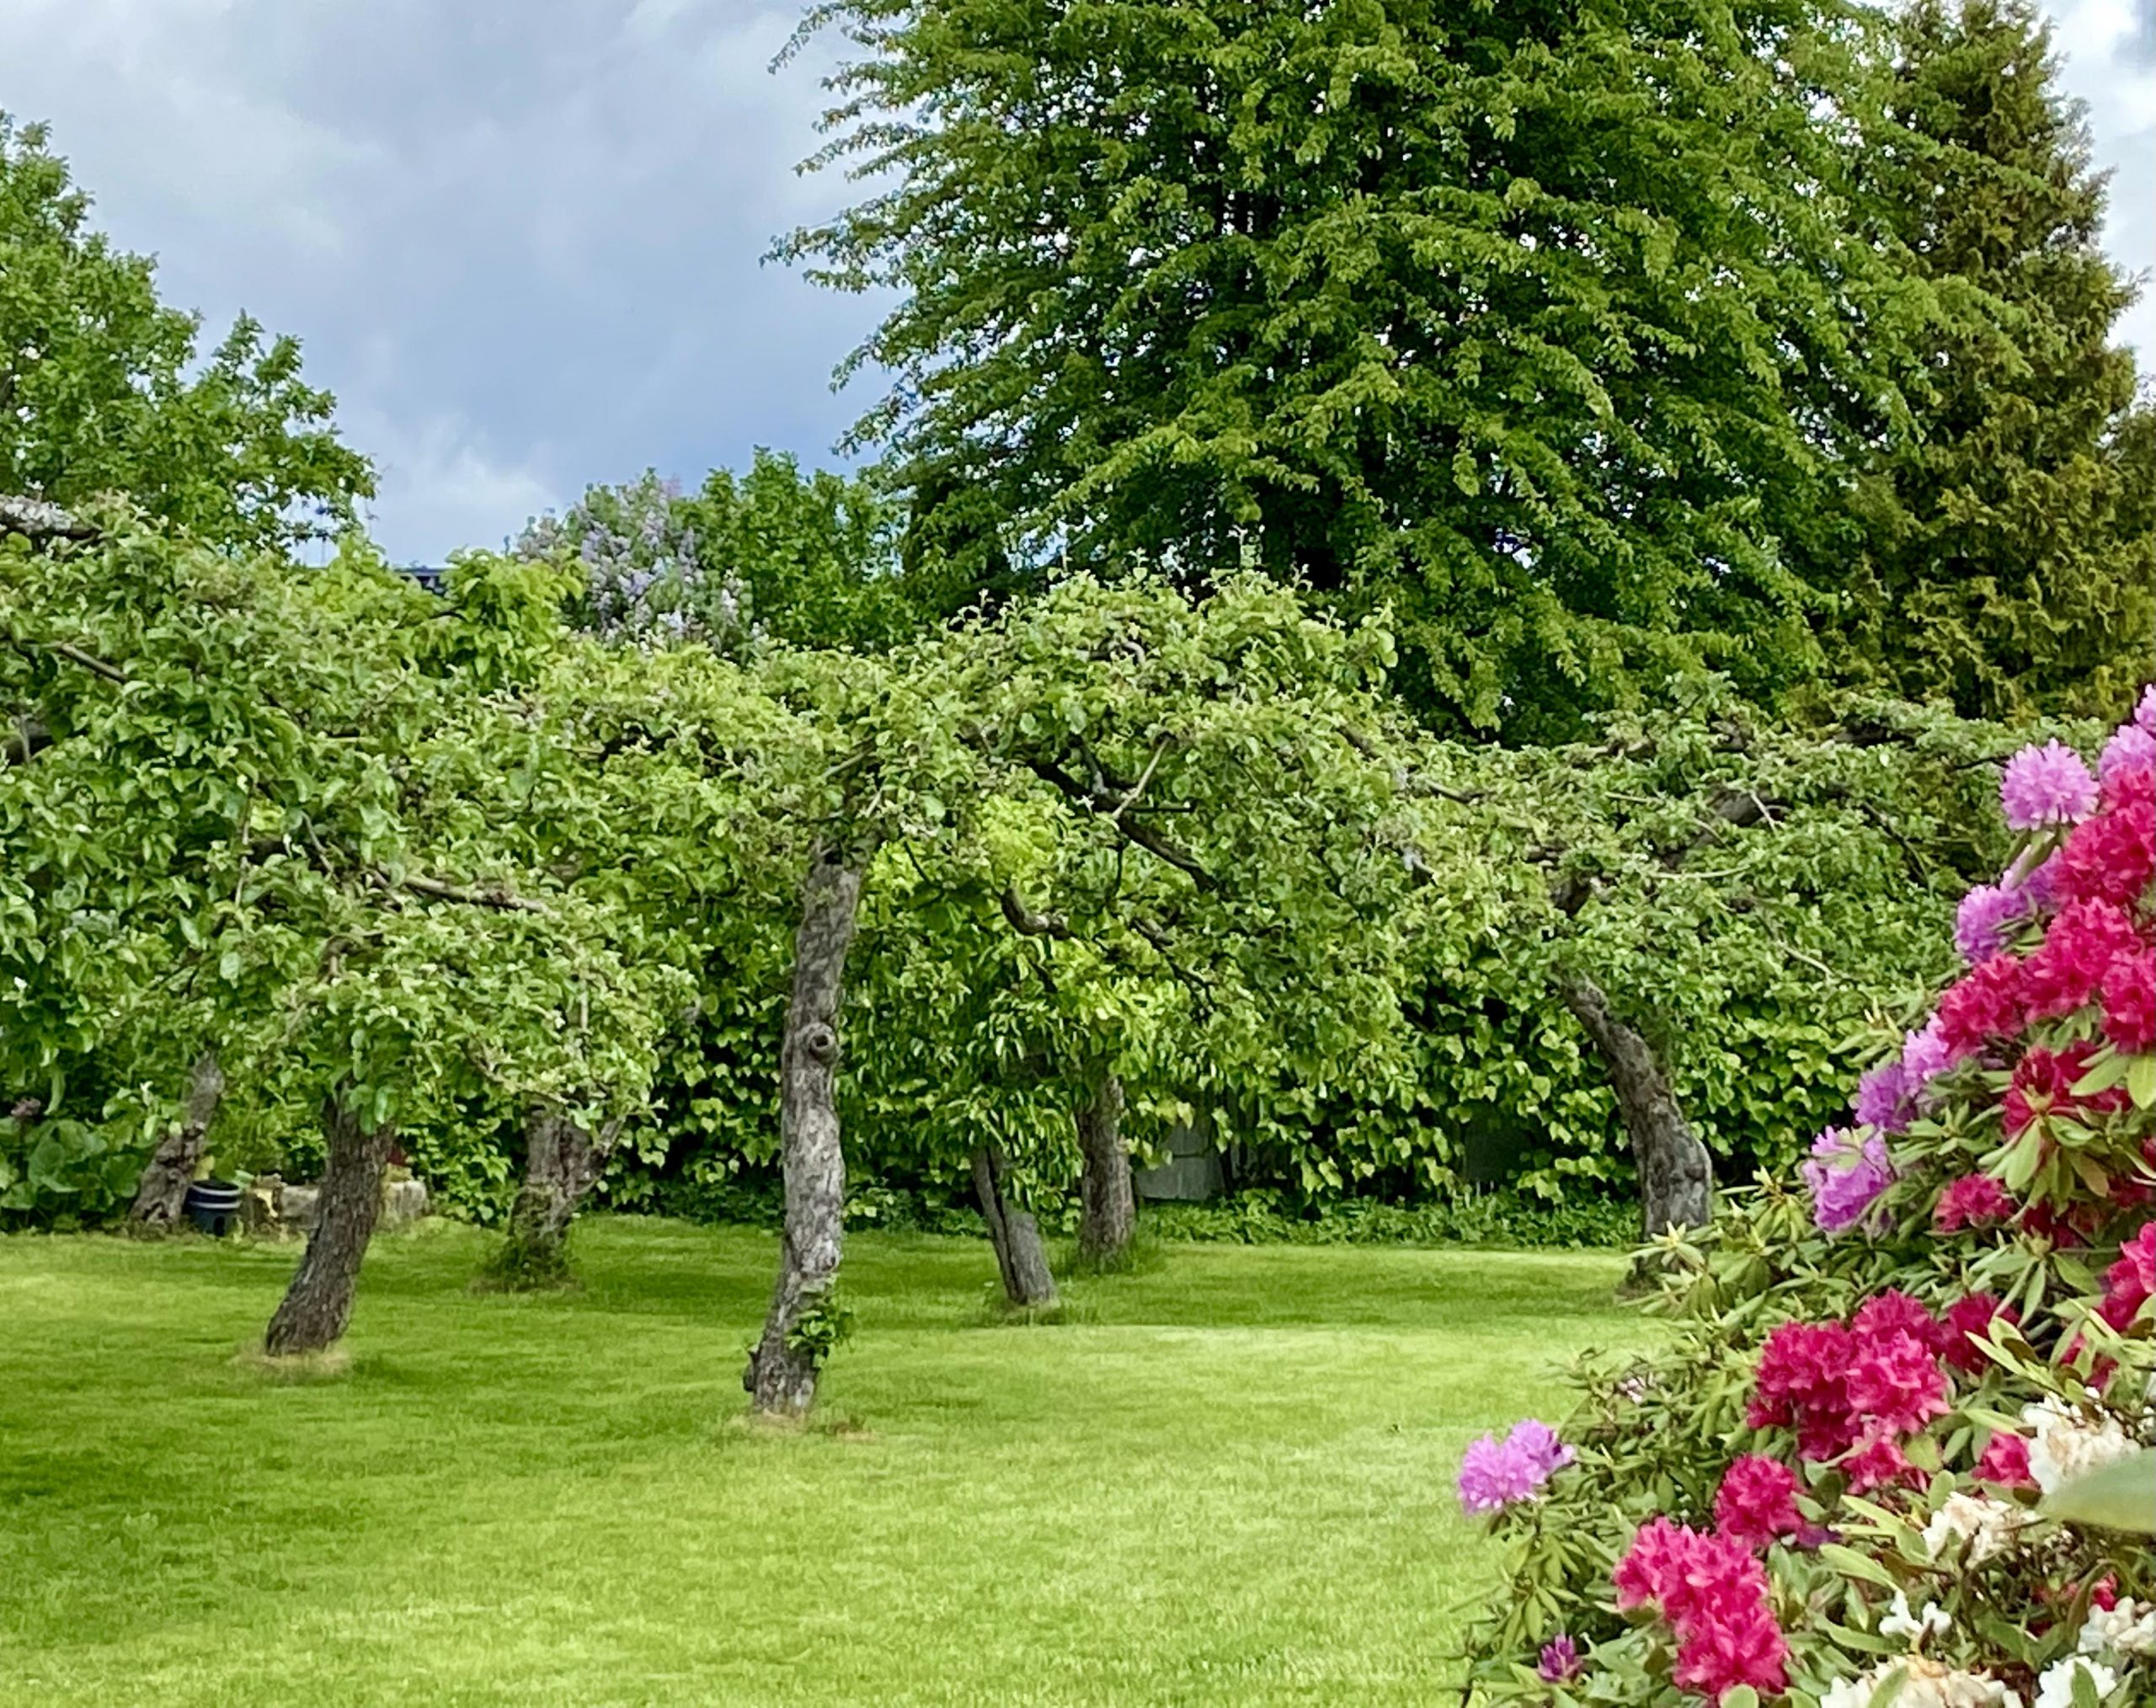 Hagen i Sveins gate 15 i Larvik, med epletrær